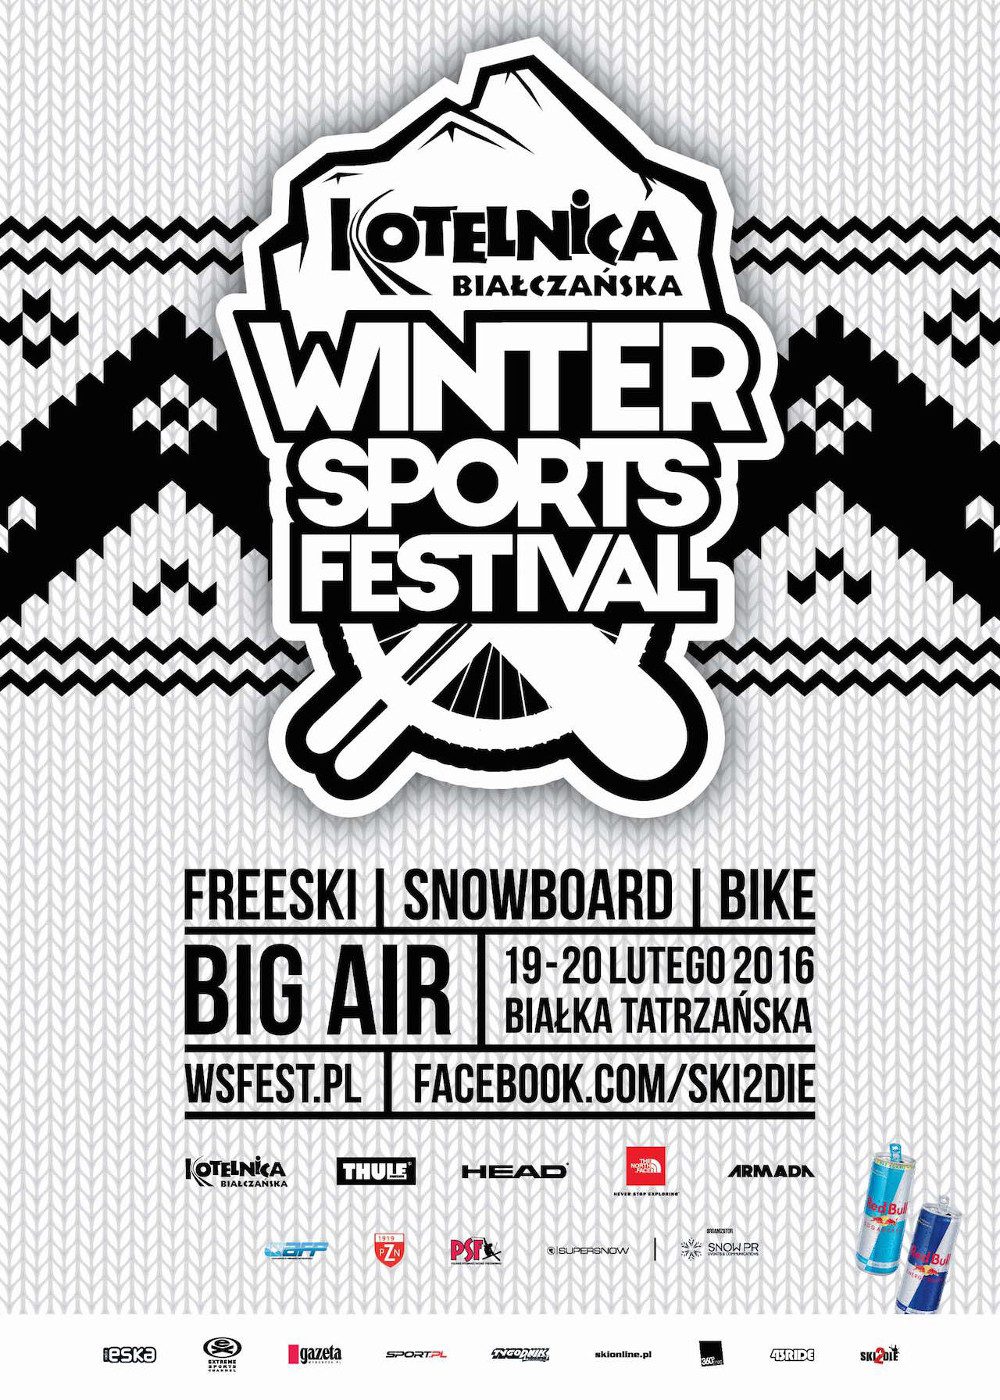 Kotelnica Białczańska Winter Sports Festival – rejestracja otwarta